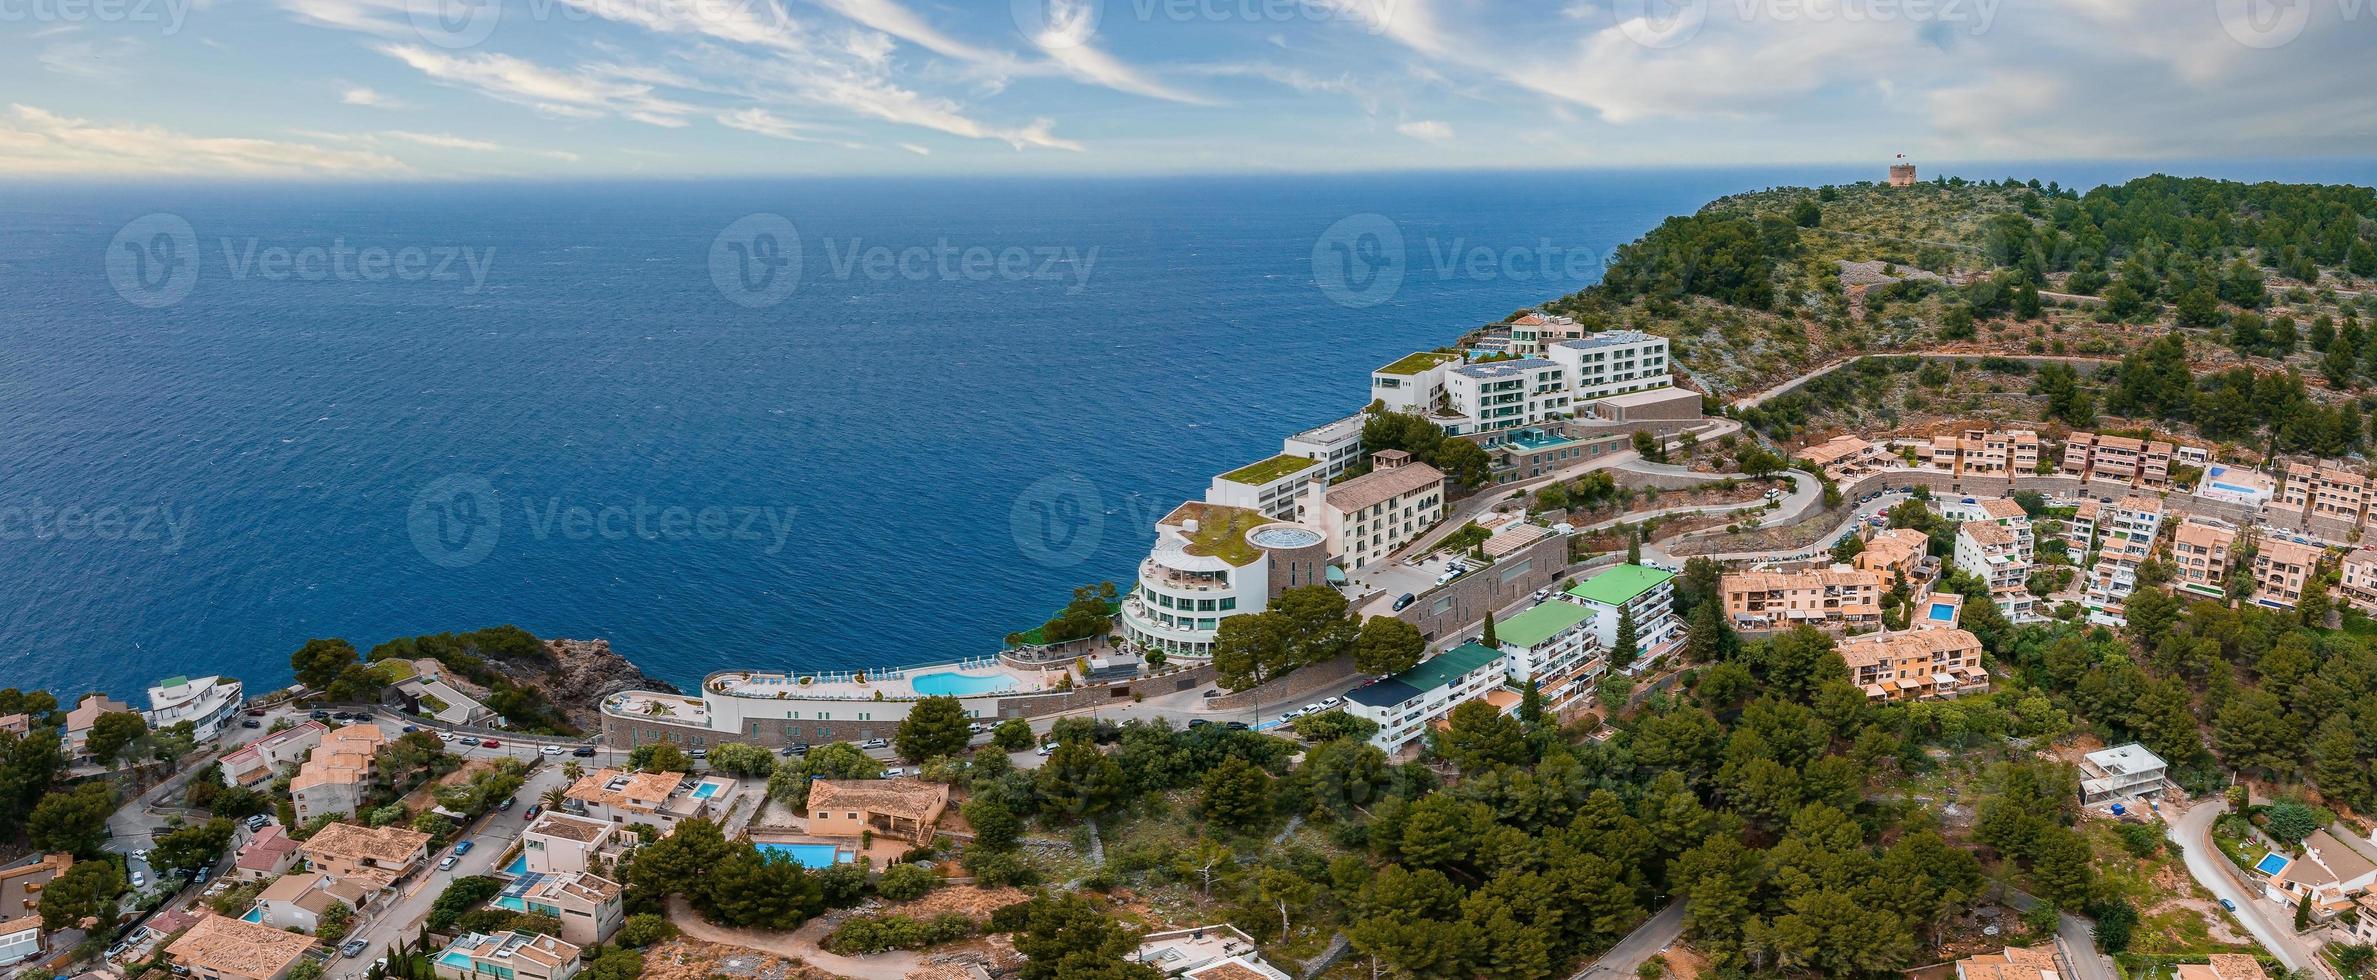 vista aérea do hotel de luxo cliff house no topo do penhasco na ilha de maiorca. foto